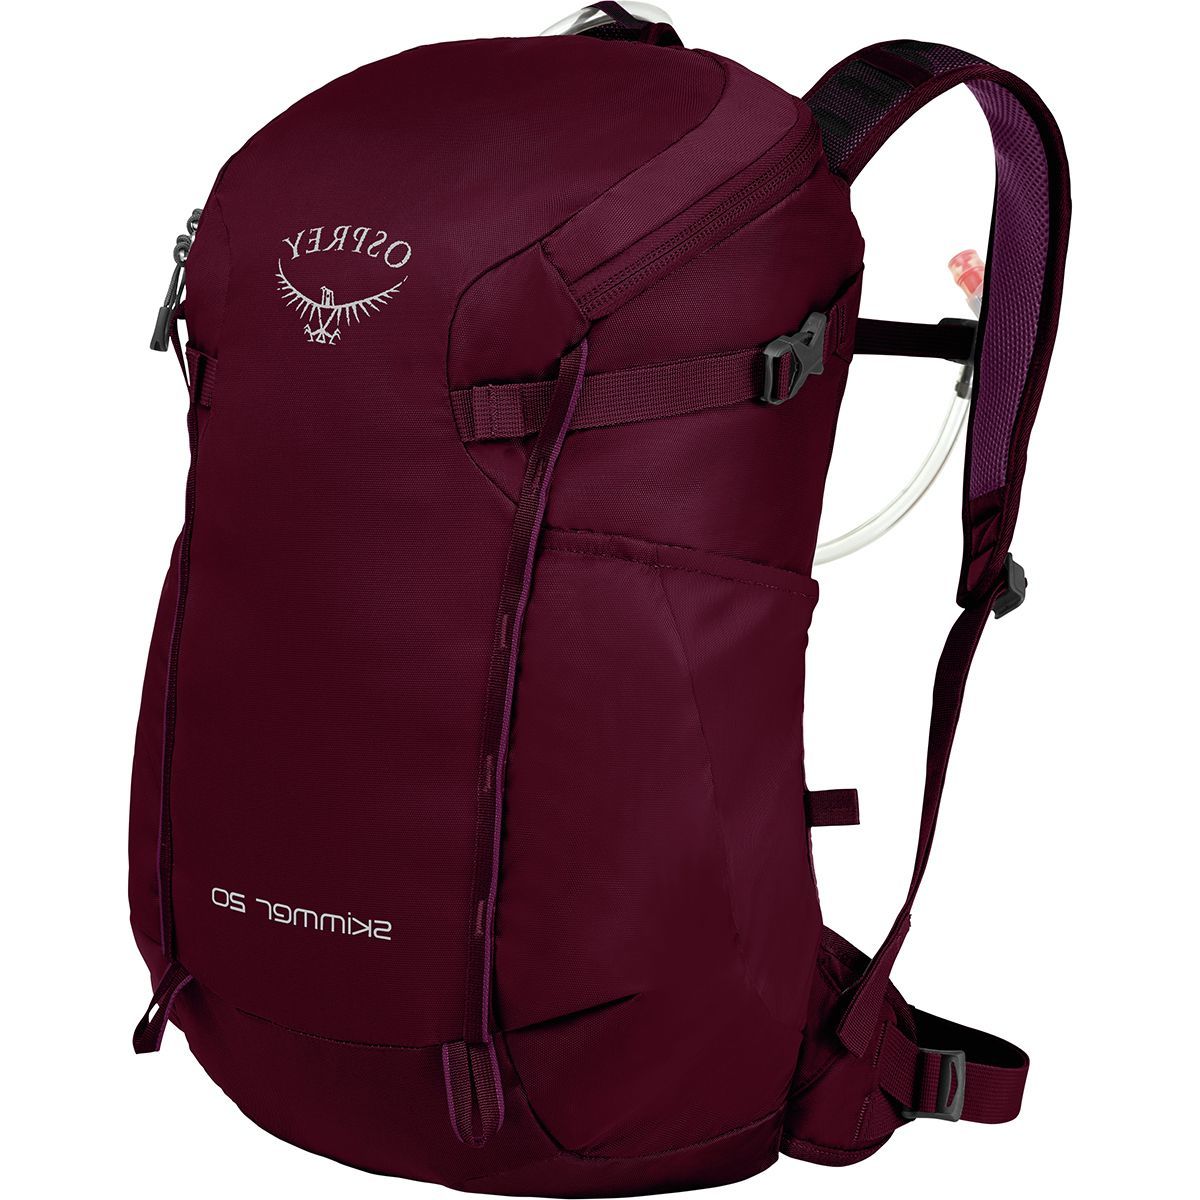 Osprey Packs Skimmer 20L Backpack - Women's